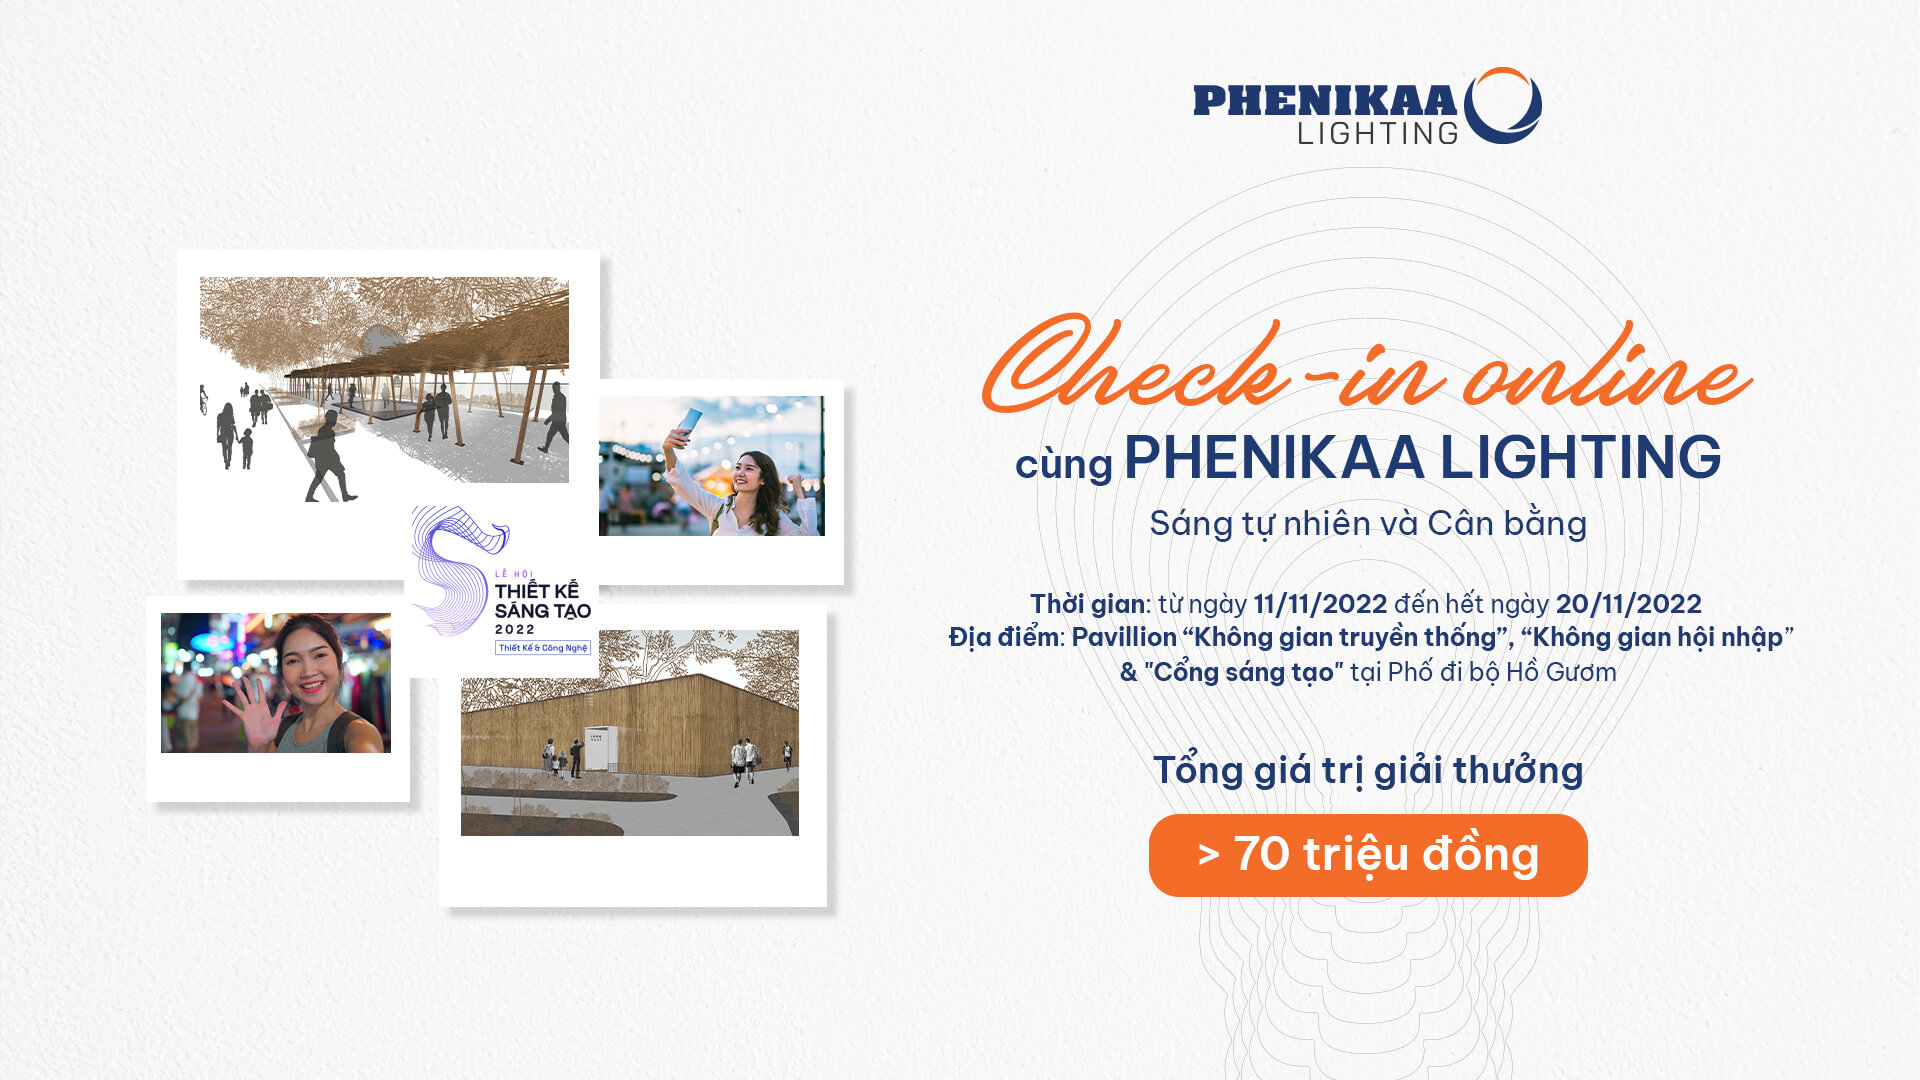 Phenikaa Lighting đồng hành cùng Lễ hội Thiết kế Sáng tạo 2022 & Khởi động cuộc thi Check-in online với Tổng giá trị lên đến 70 triệu đồng